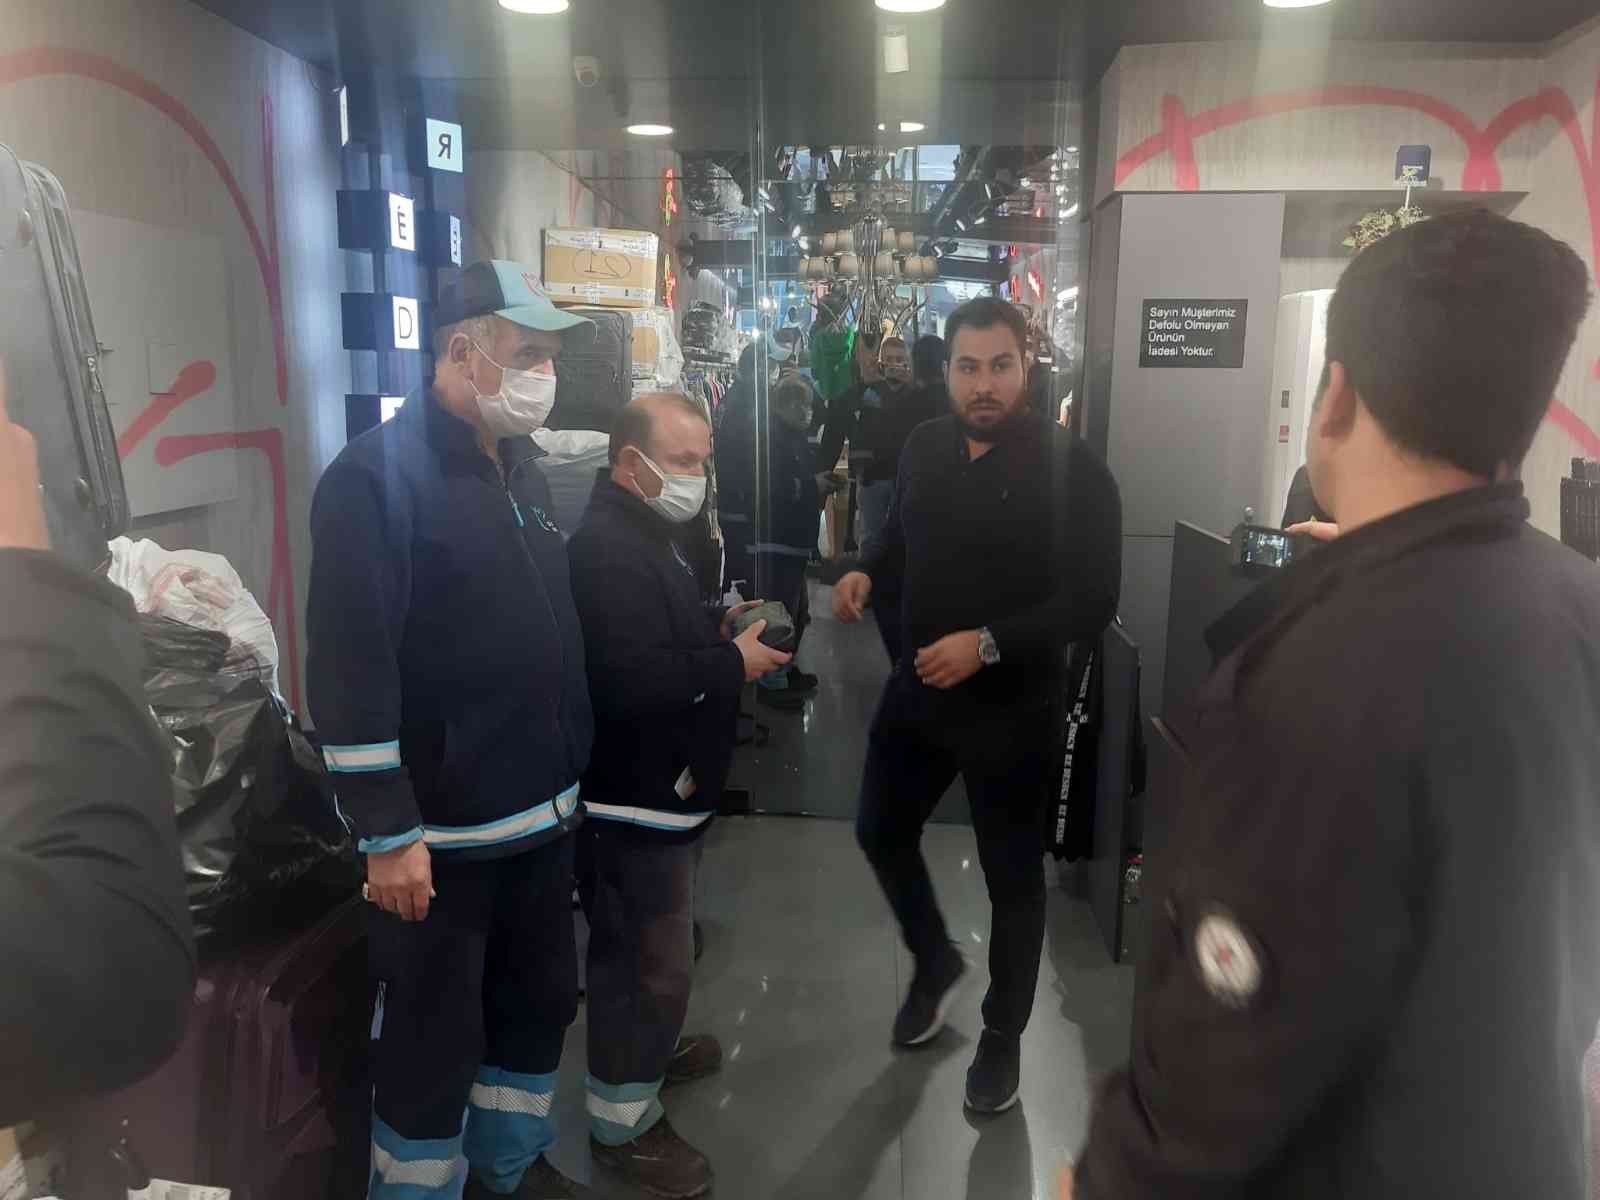 Temizlik görevlisinden örnek davranış, içi para dolu çantayı polise teslim etti #istanbul